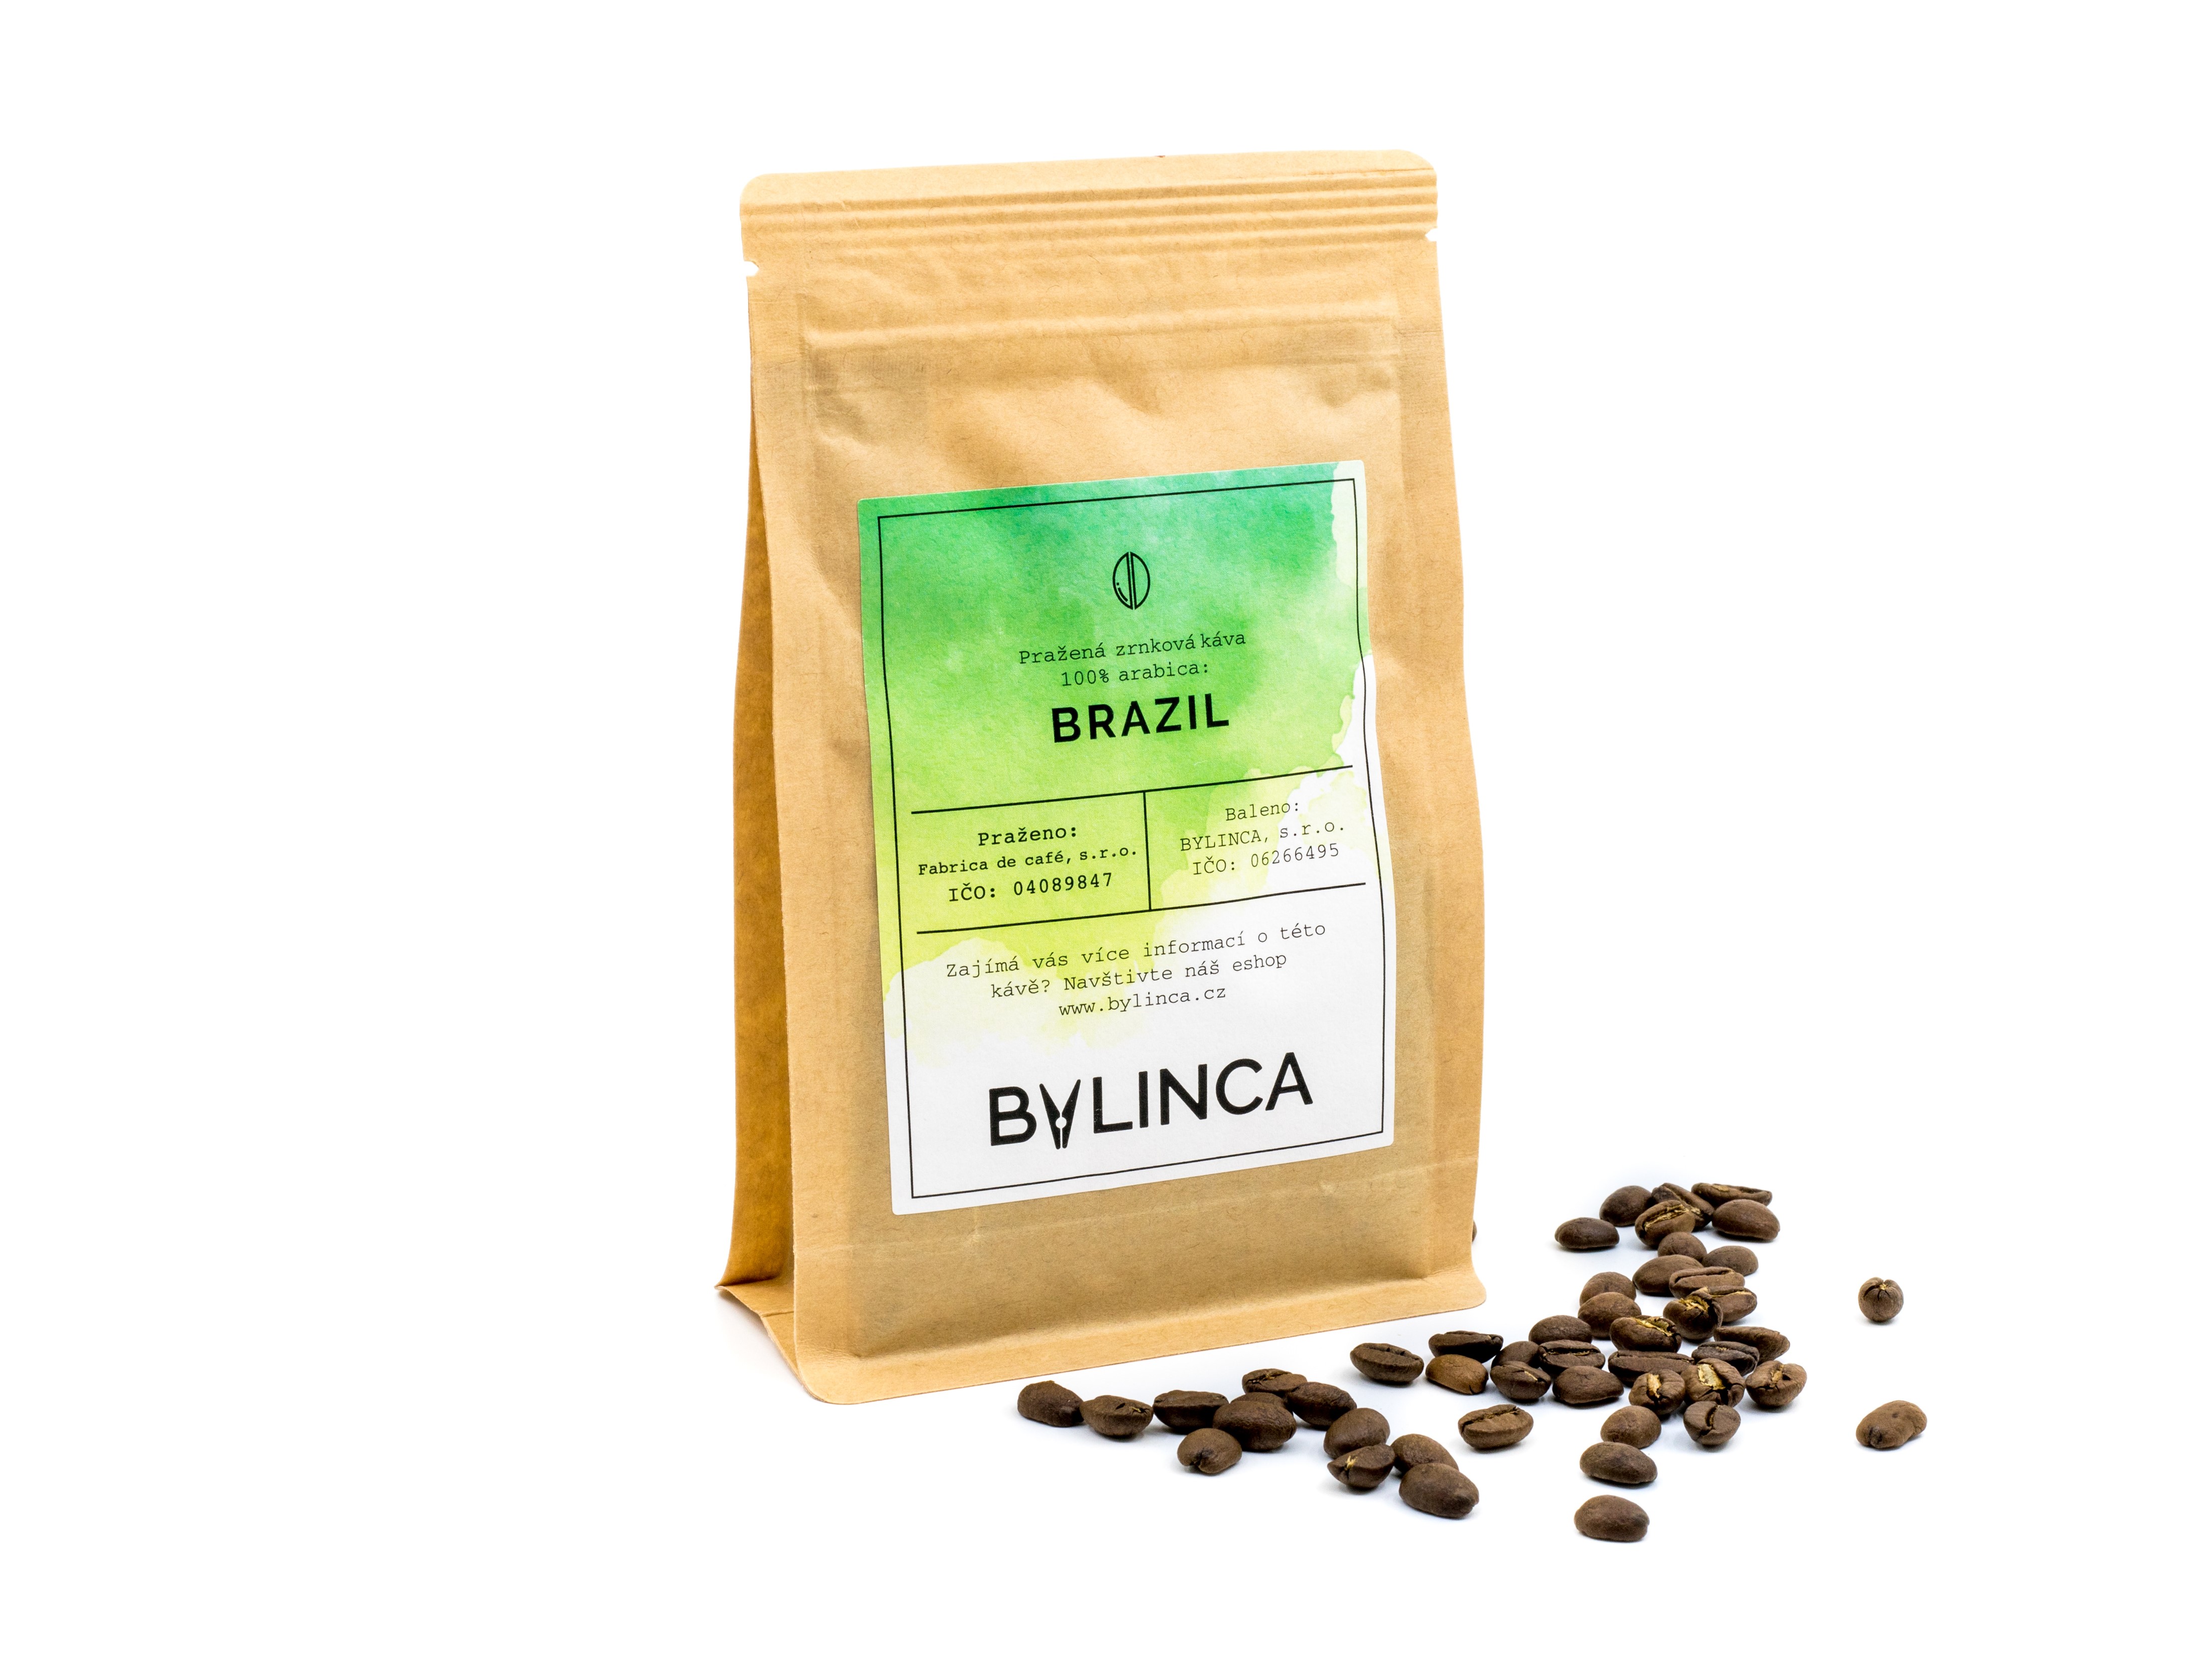 BYLINCA Zrnková káva: Brazil 100g, 250g, 500g, 1000g 1 ks: 250g